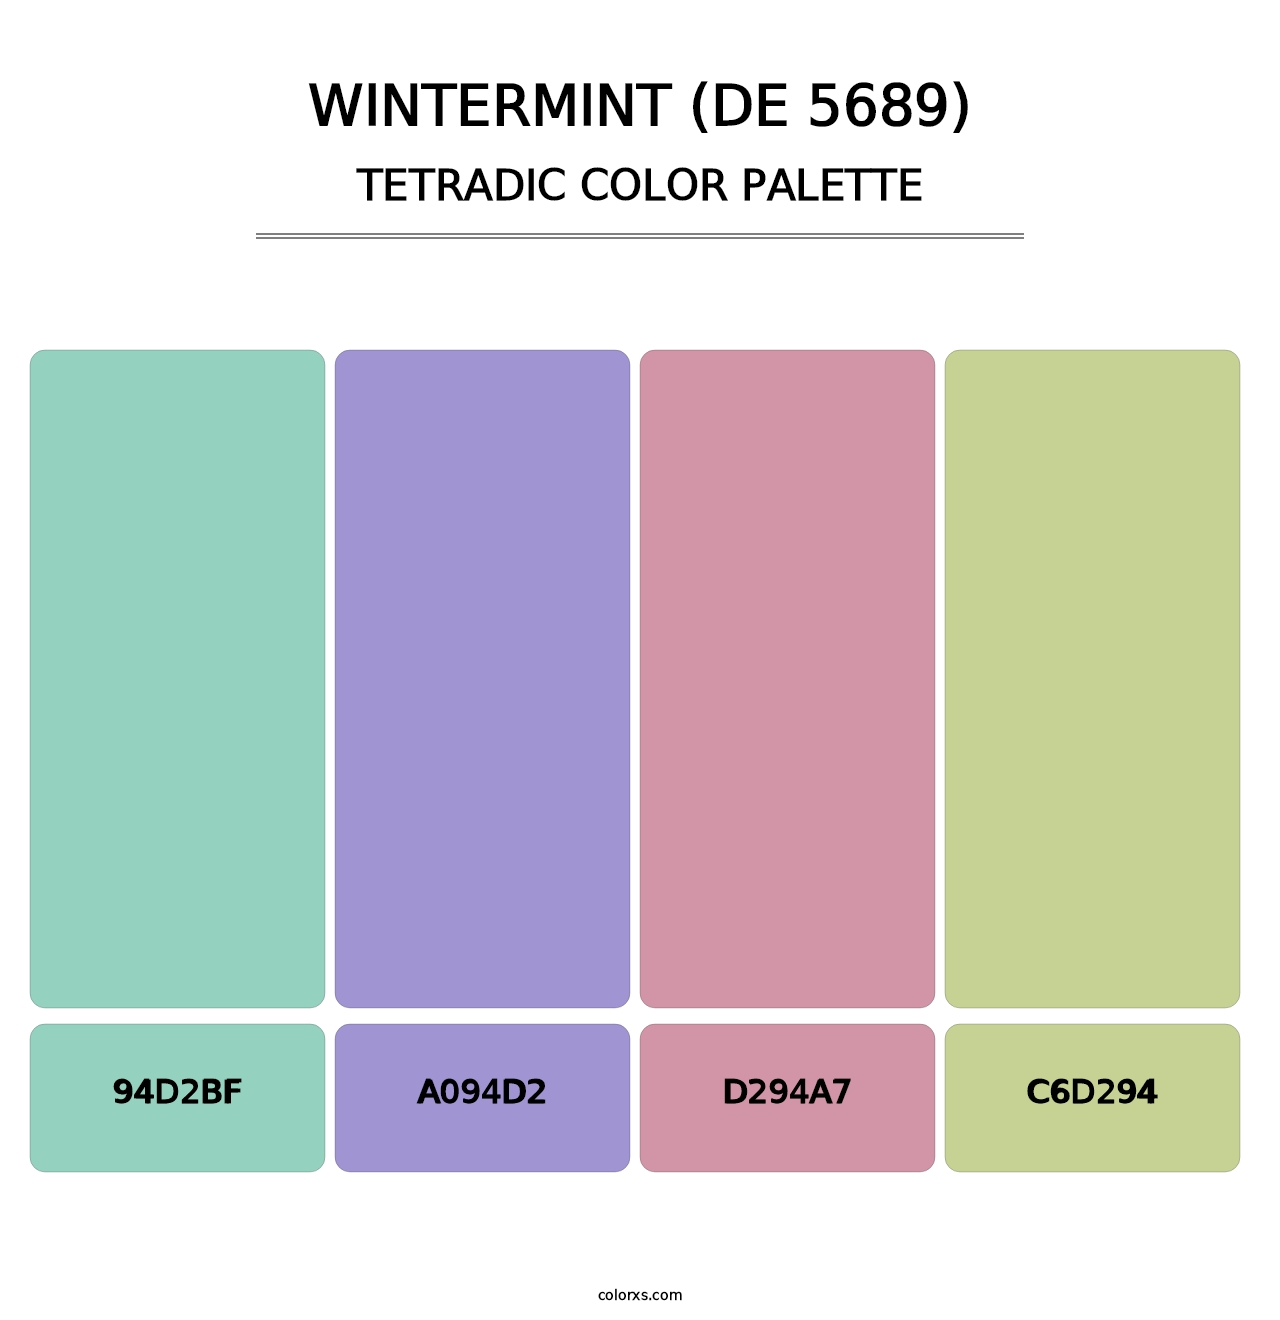 Wintermint (DE 5689) - Tetradic Color Palette